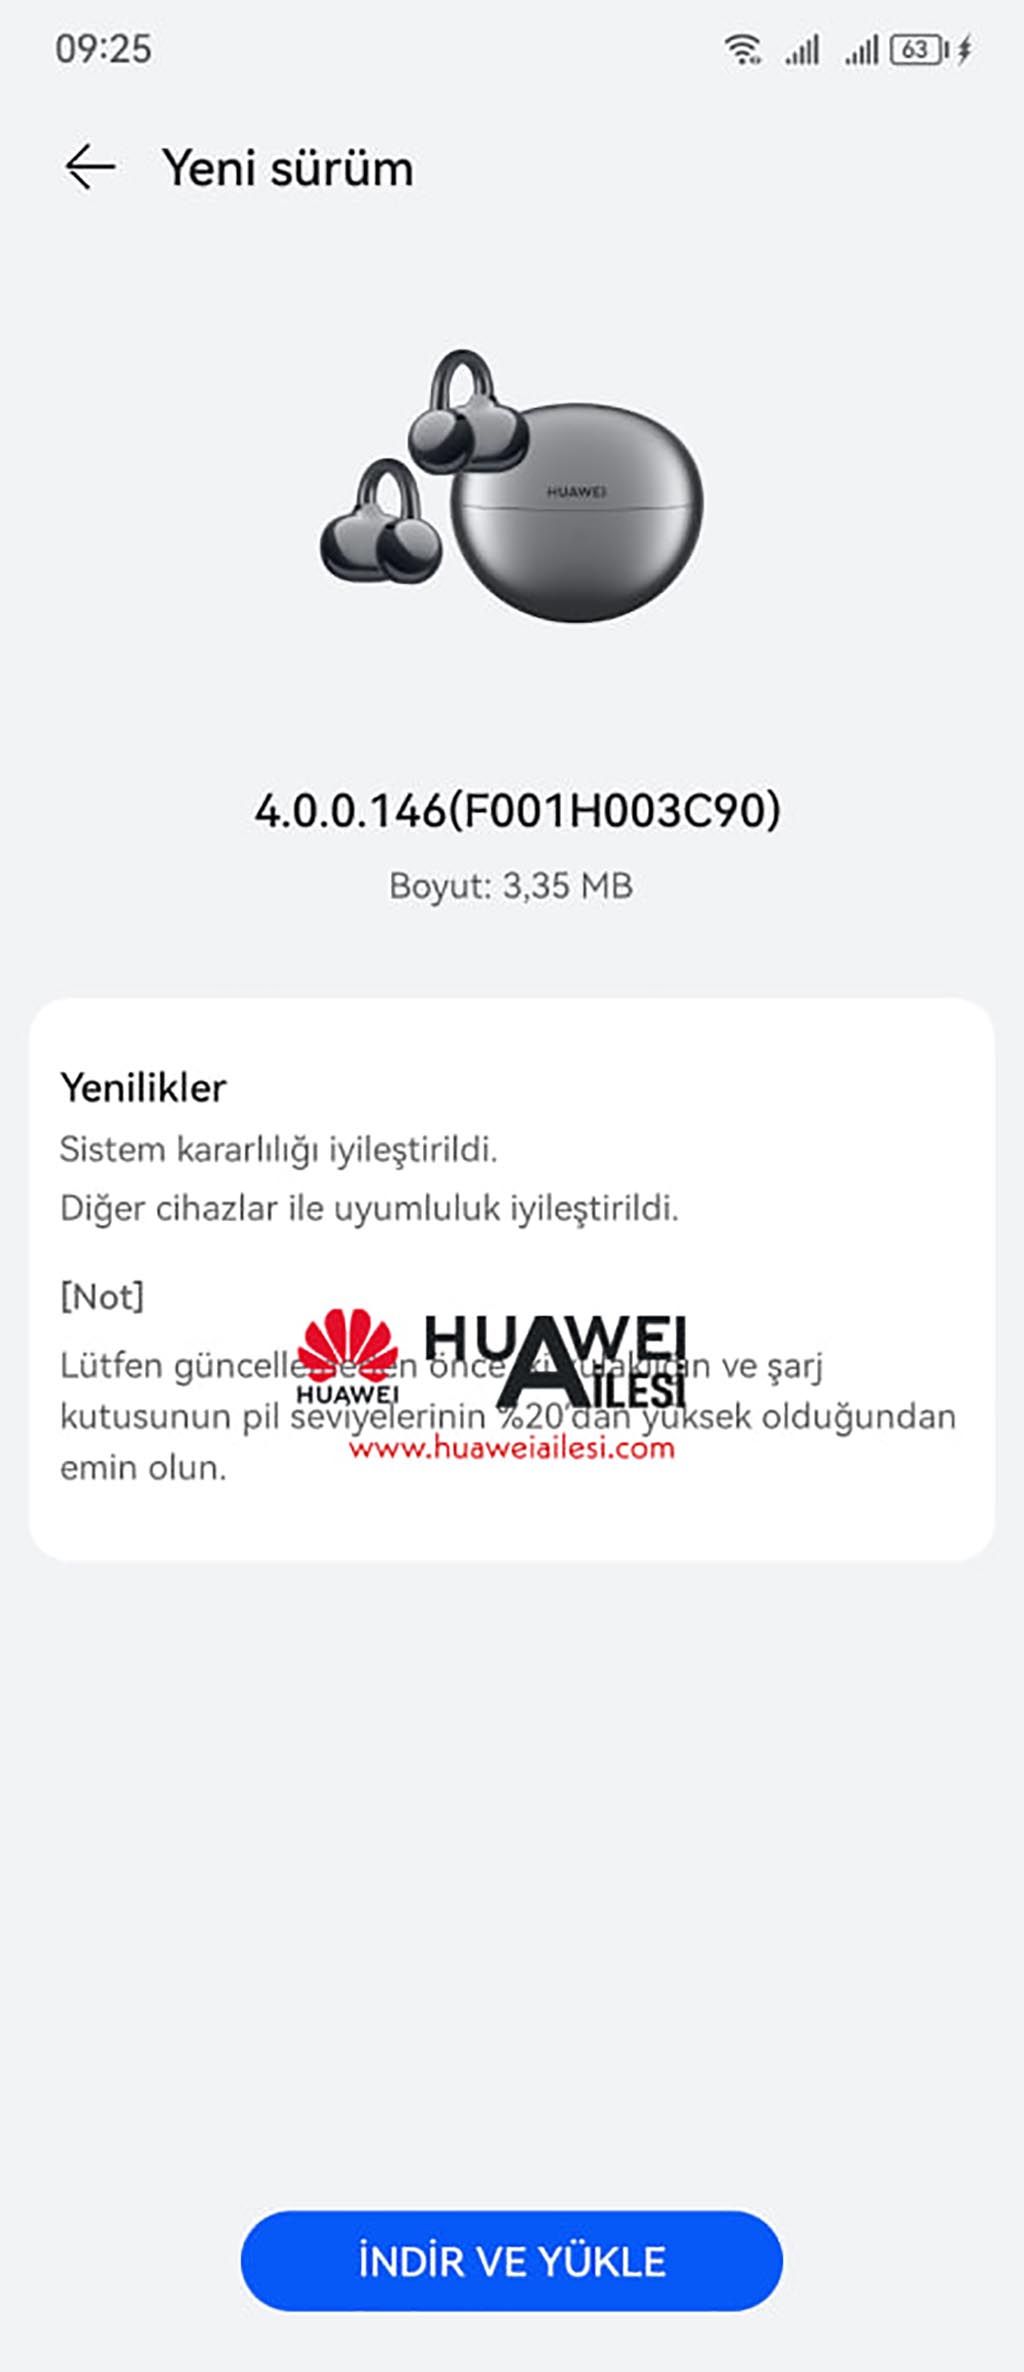 Huawei FreeClip January 2024 firmware